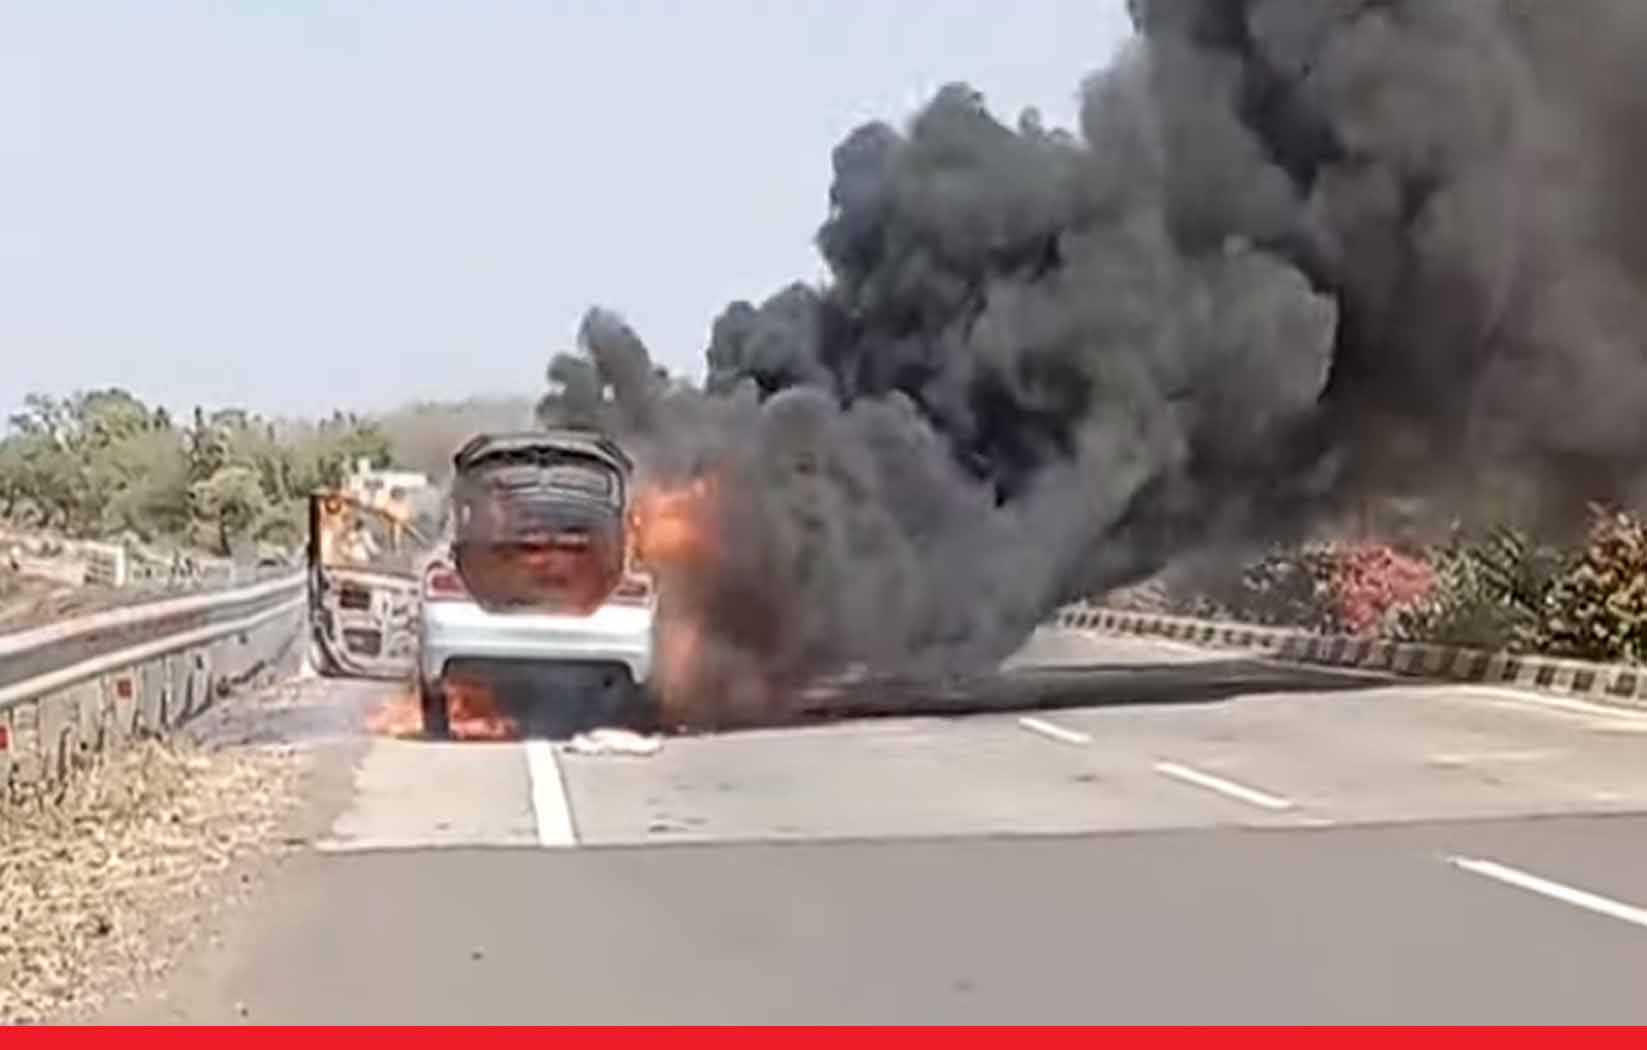 नागपुर में शख्स ने पत्नी-बेटे के साथ कार में लगाई आग, आर्थिक तंगी से था परेशान